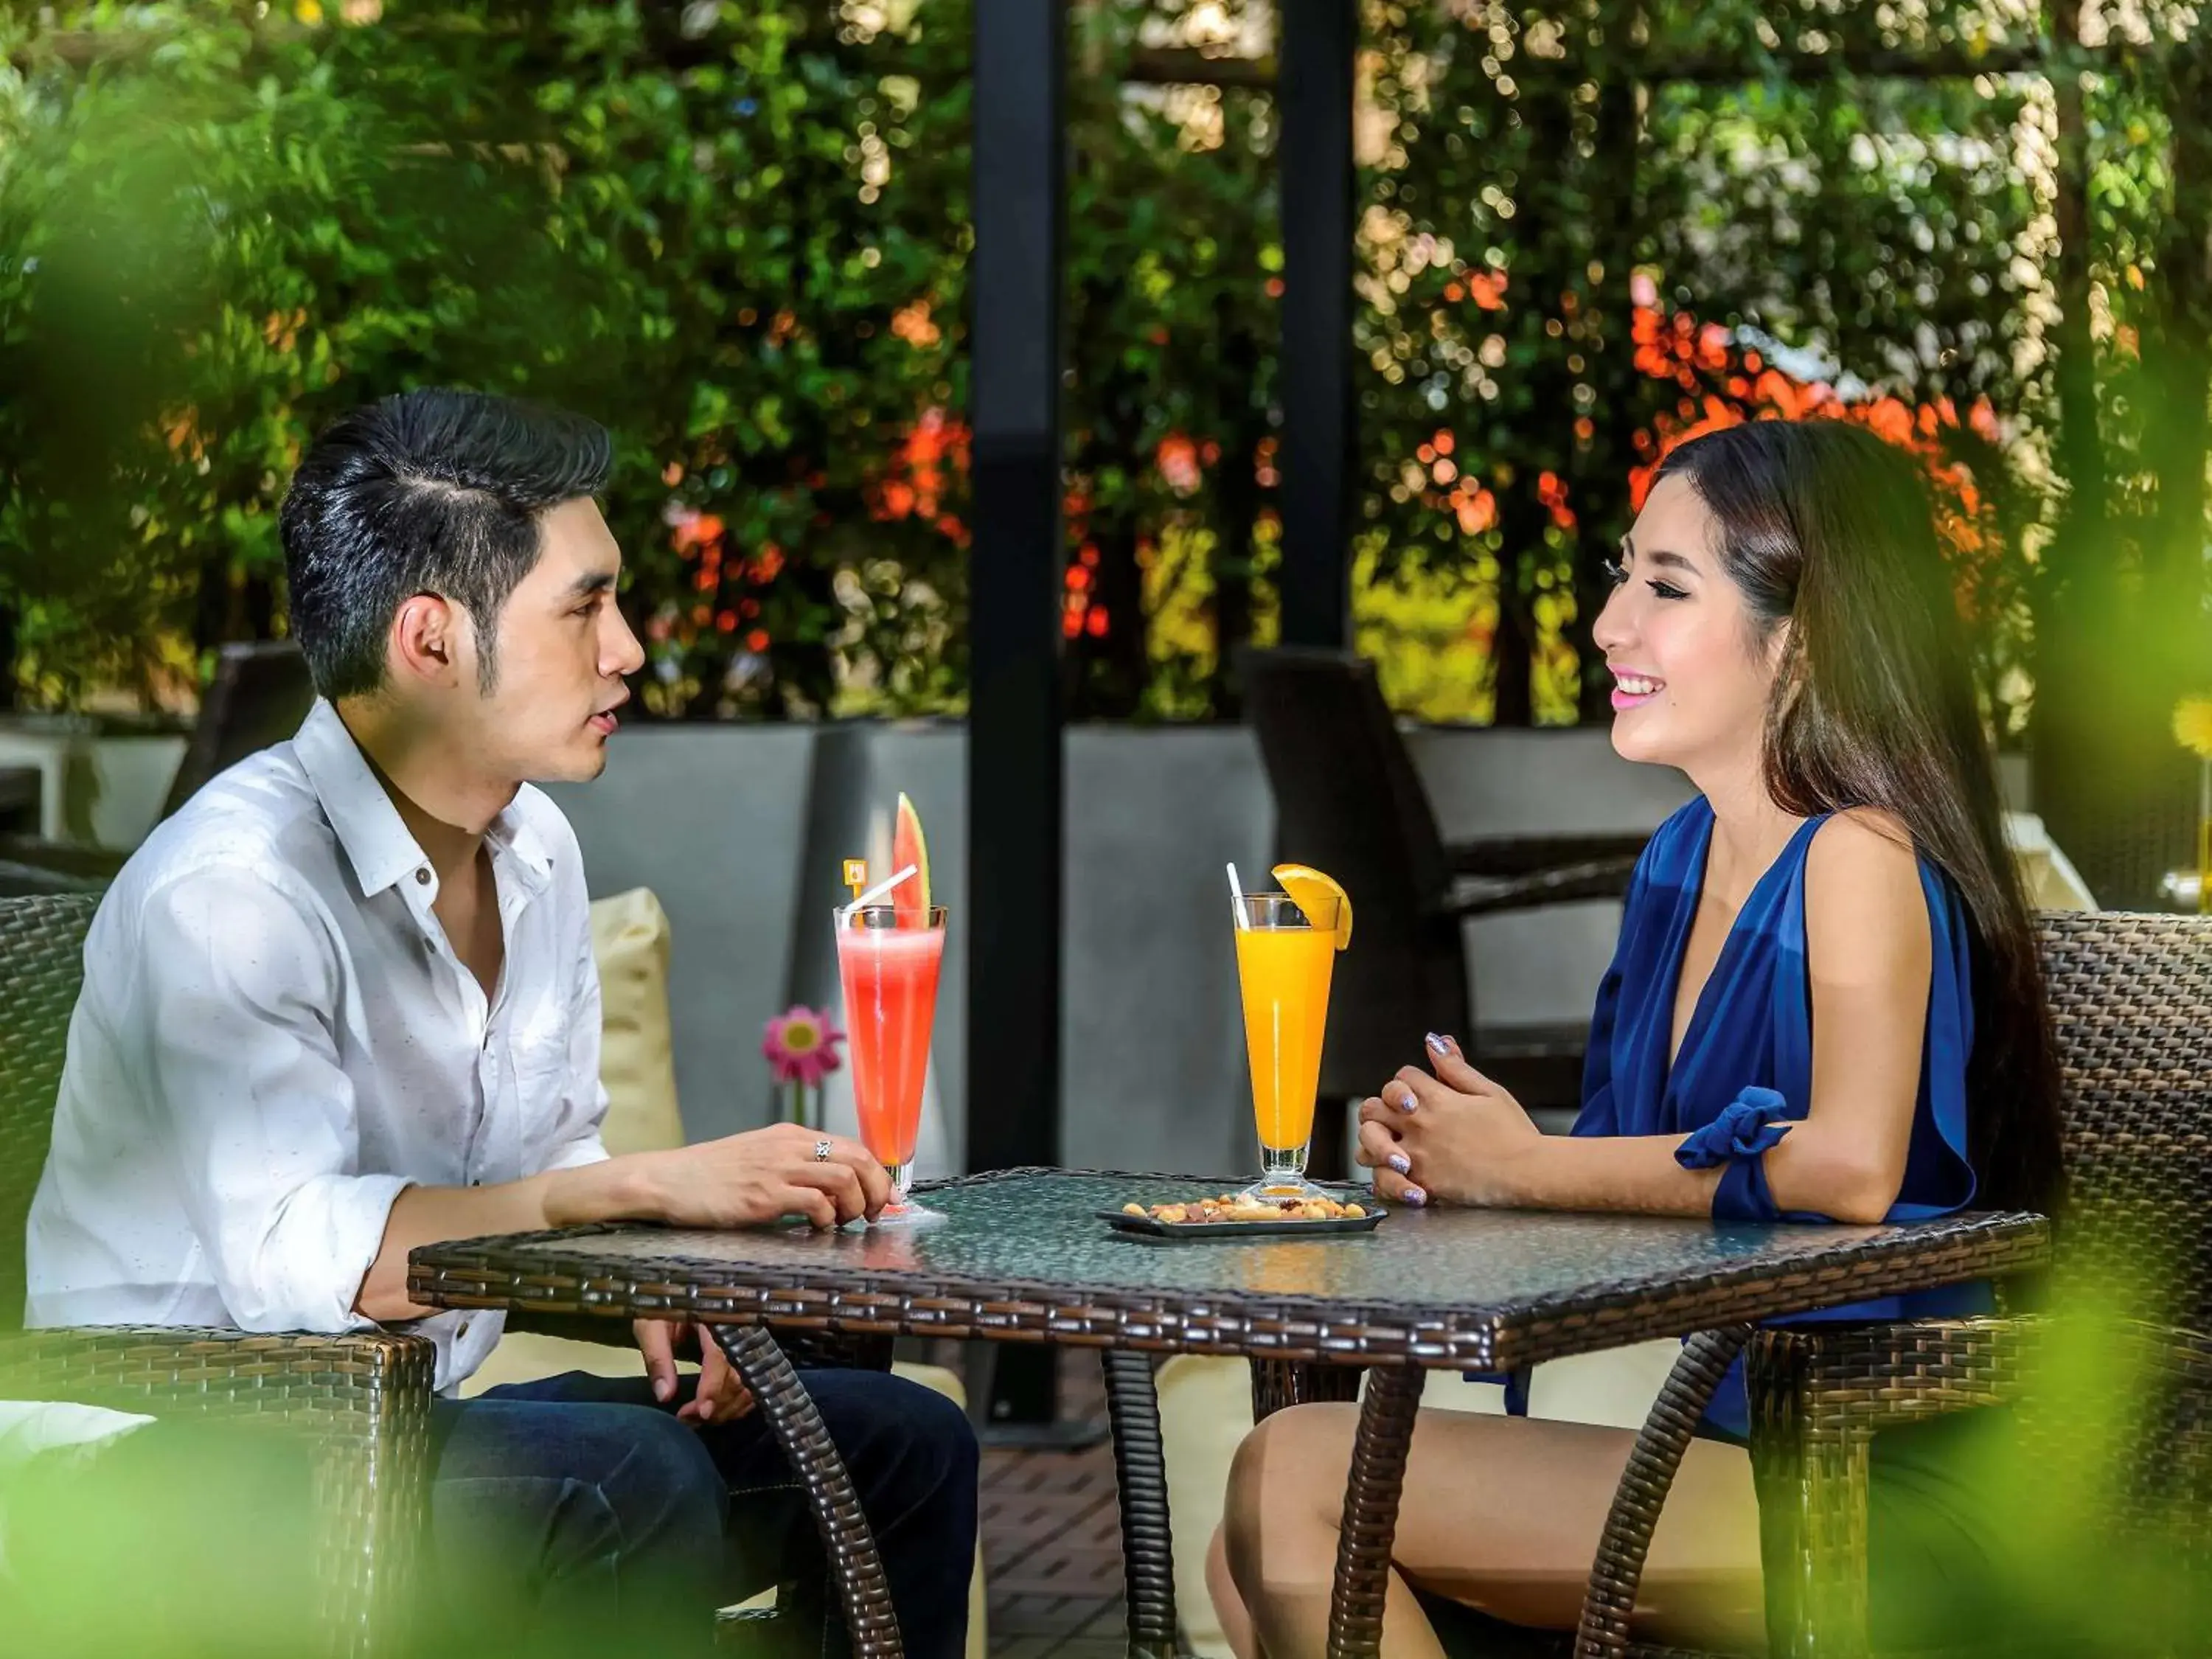 Lounge or bar in Novotel Bangkok Impact Hotel